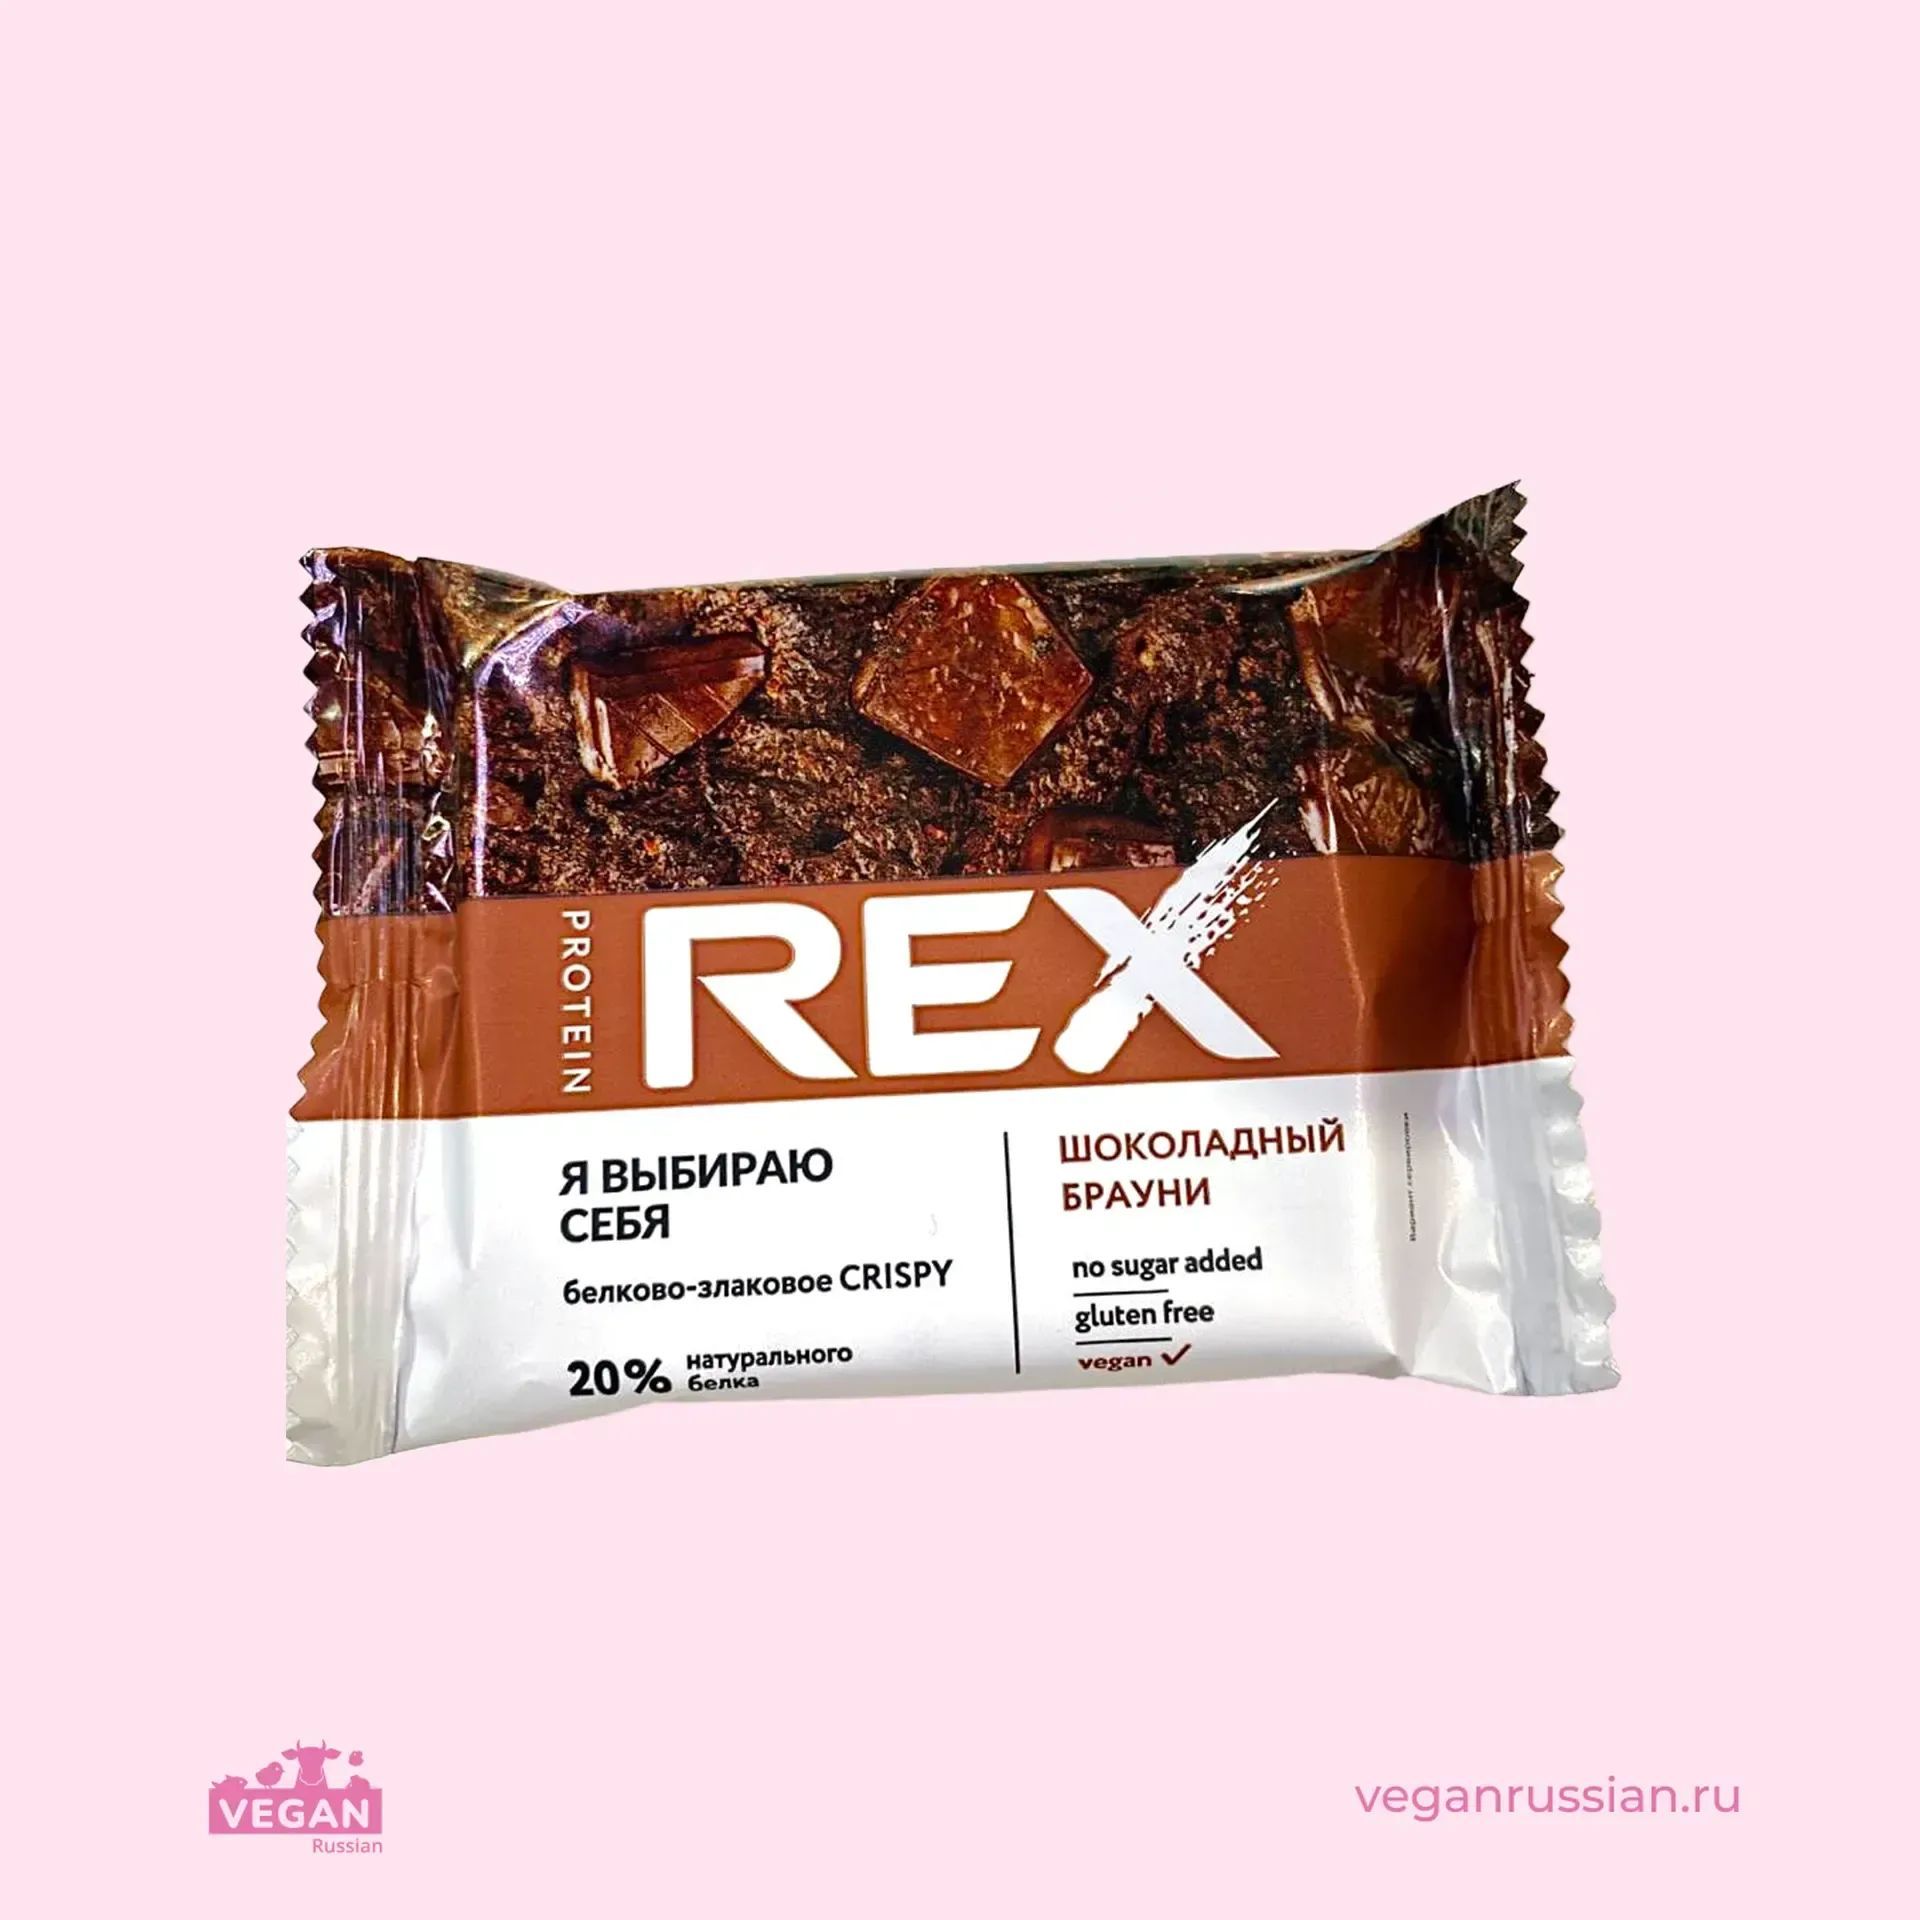 Protein rex брауни. Protein Rex Crispy 55%. Протеиновые хлебцы Protein Rex. Protein Rex батончики Брауни. Шоколадный Брауни хлебцы PROTEINREX.